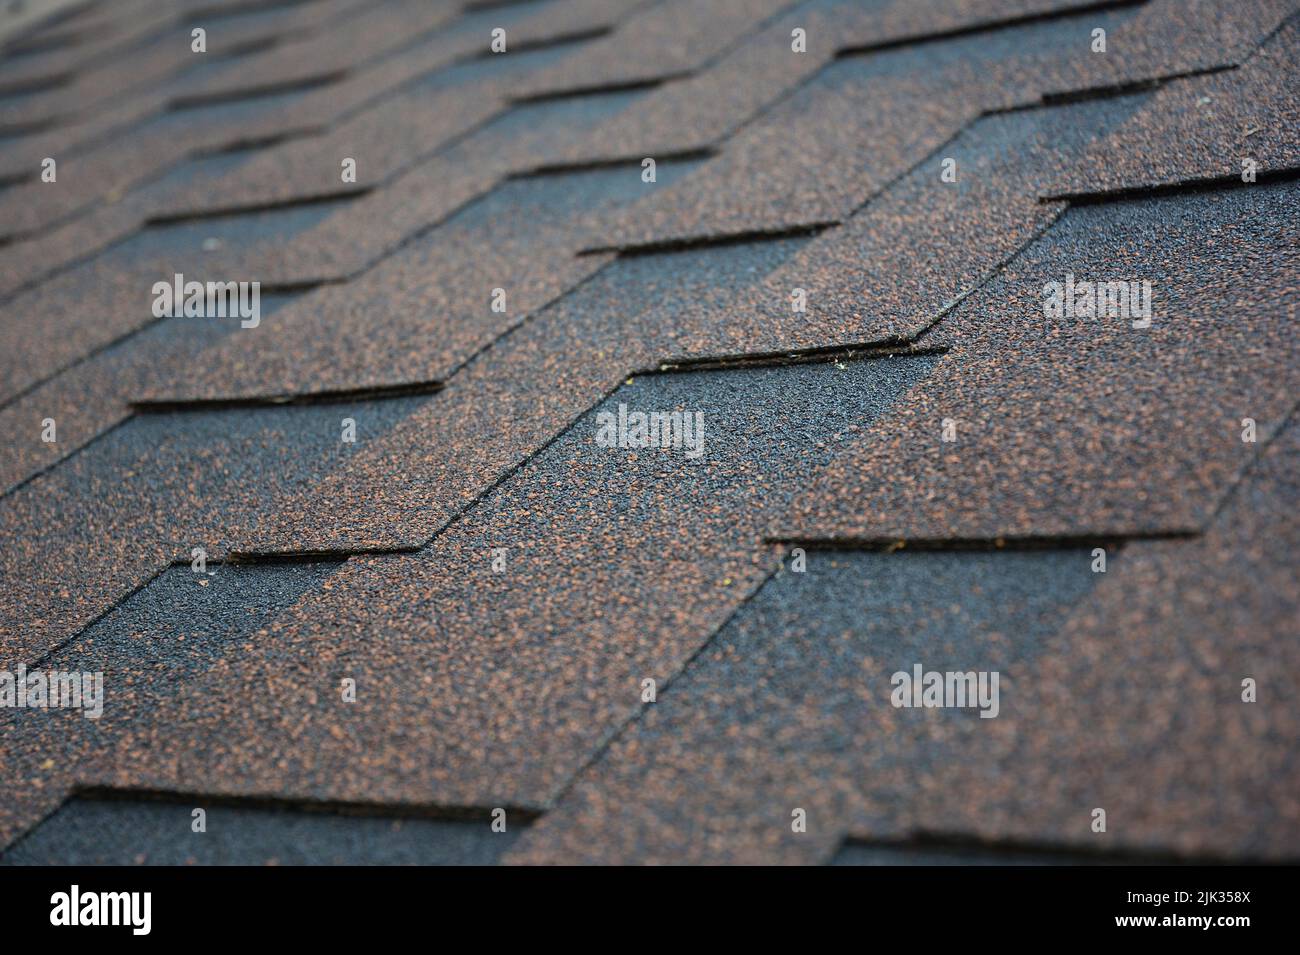 Kupfer, braun architektonischen, dimensionalen Asphalt Dachschindeln Hintergrund. Nahaufnahme eines Daches, das mit braunen Asphaltschindeln bedeckt ist. Stockfoto